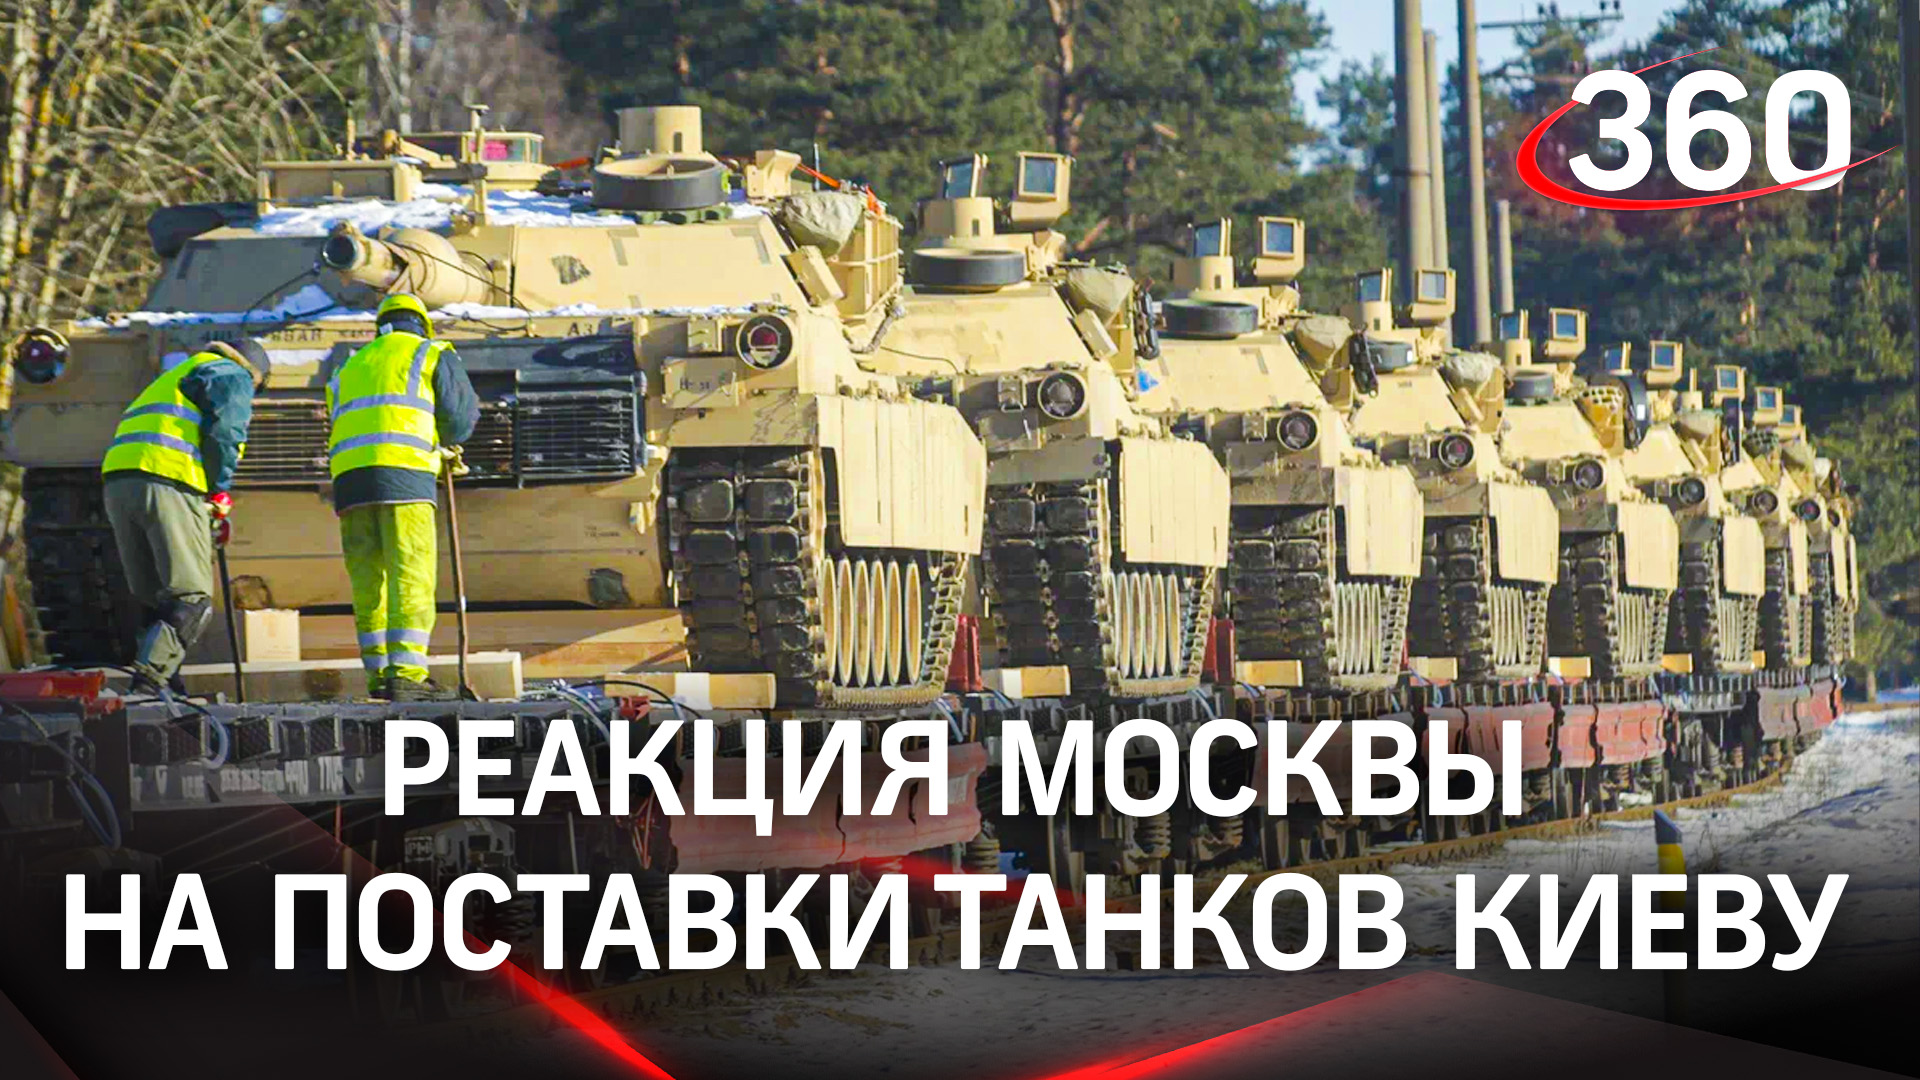 Танк тому и быть: США передадут Киеву свои Abrams, ФРГ поставит Leopard 2 - СМИ. Реакция Москвы